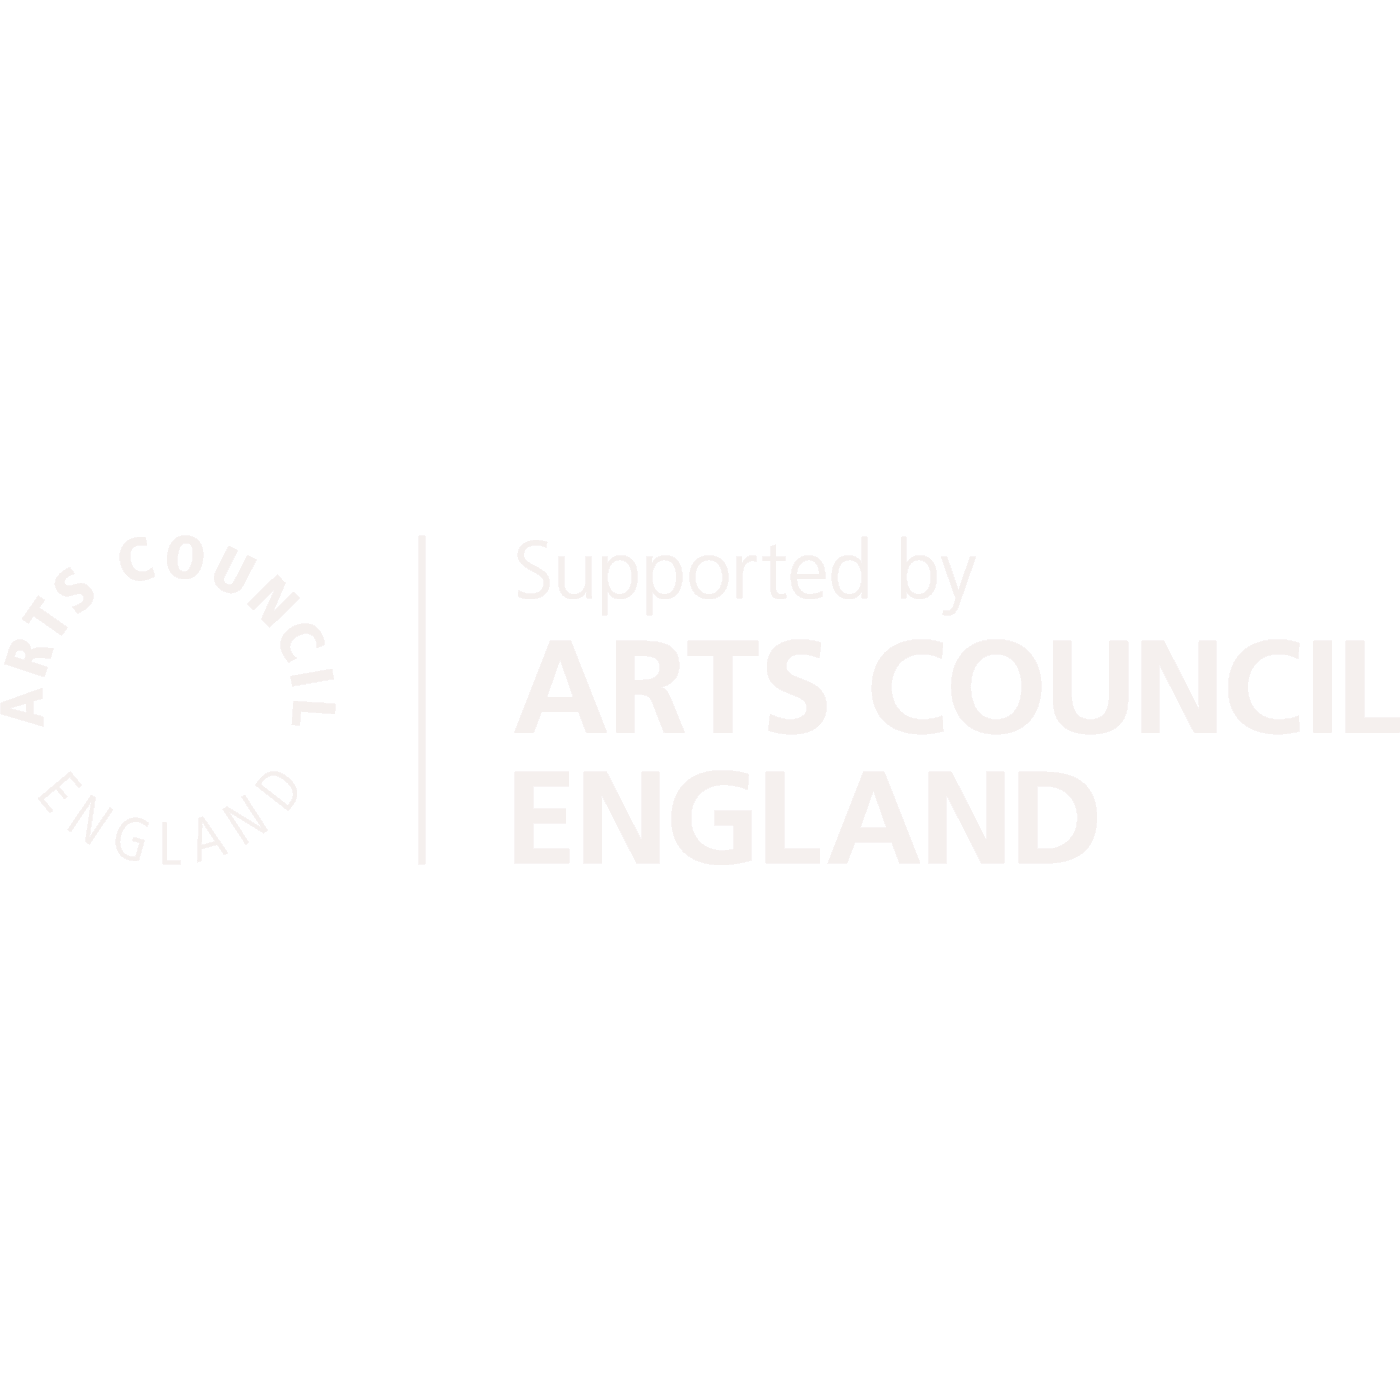 arts-council-logo